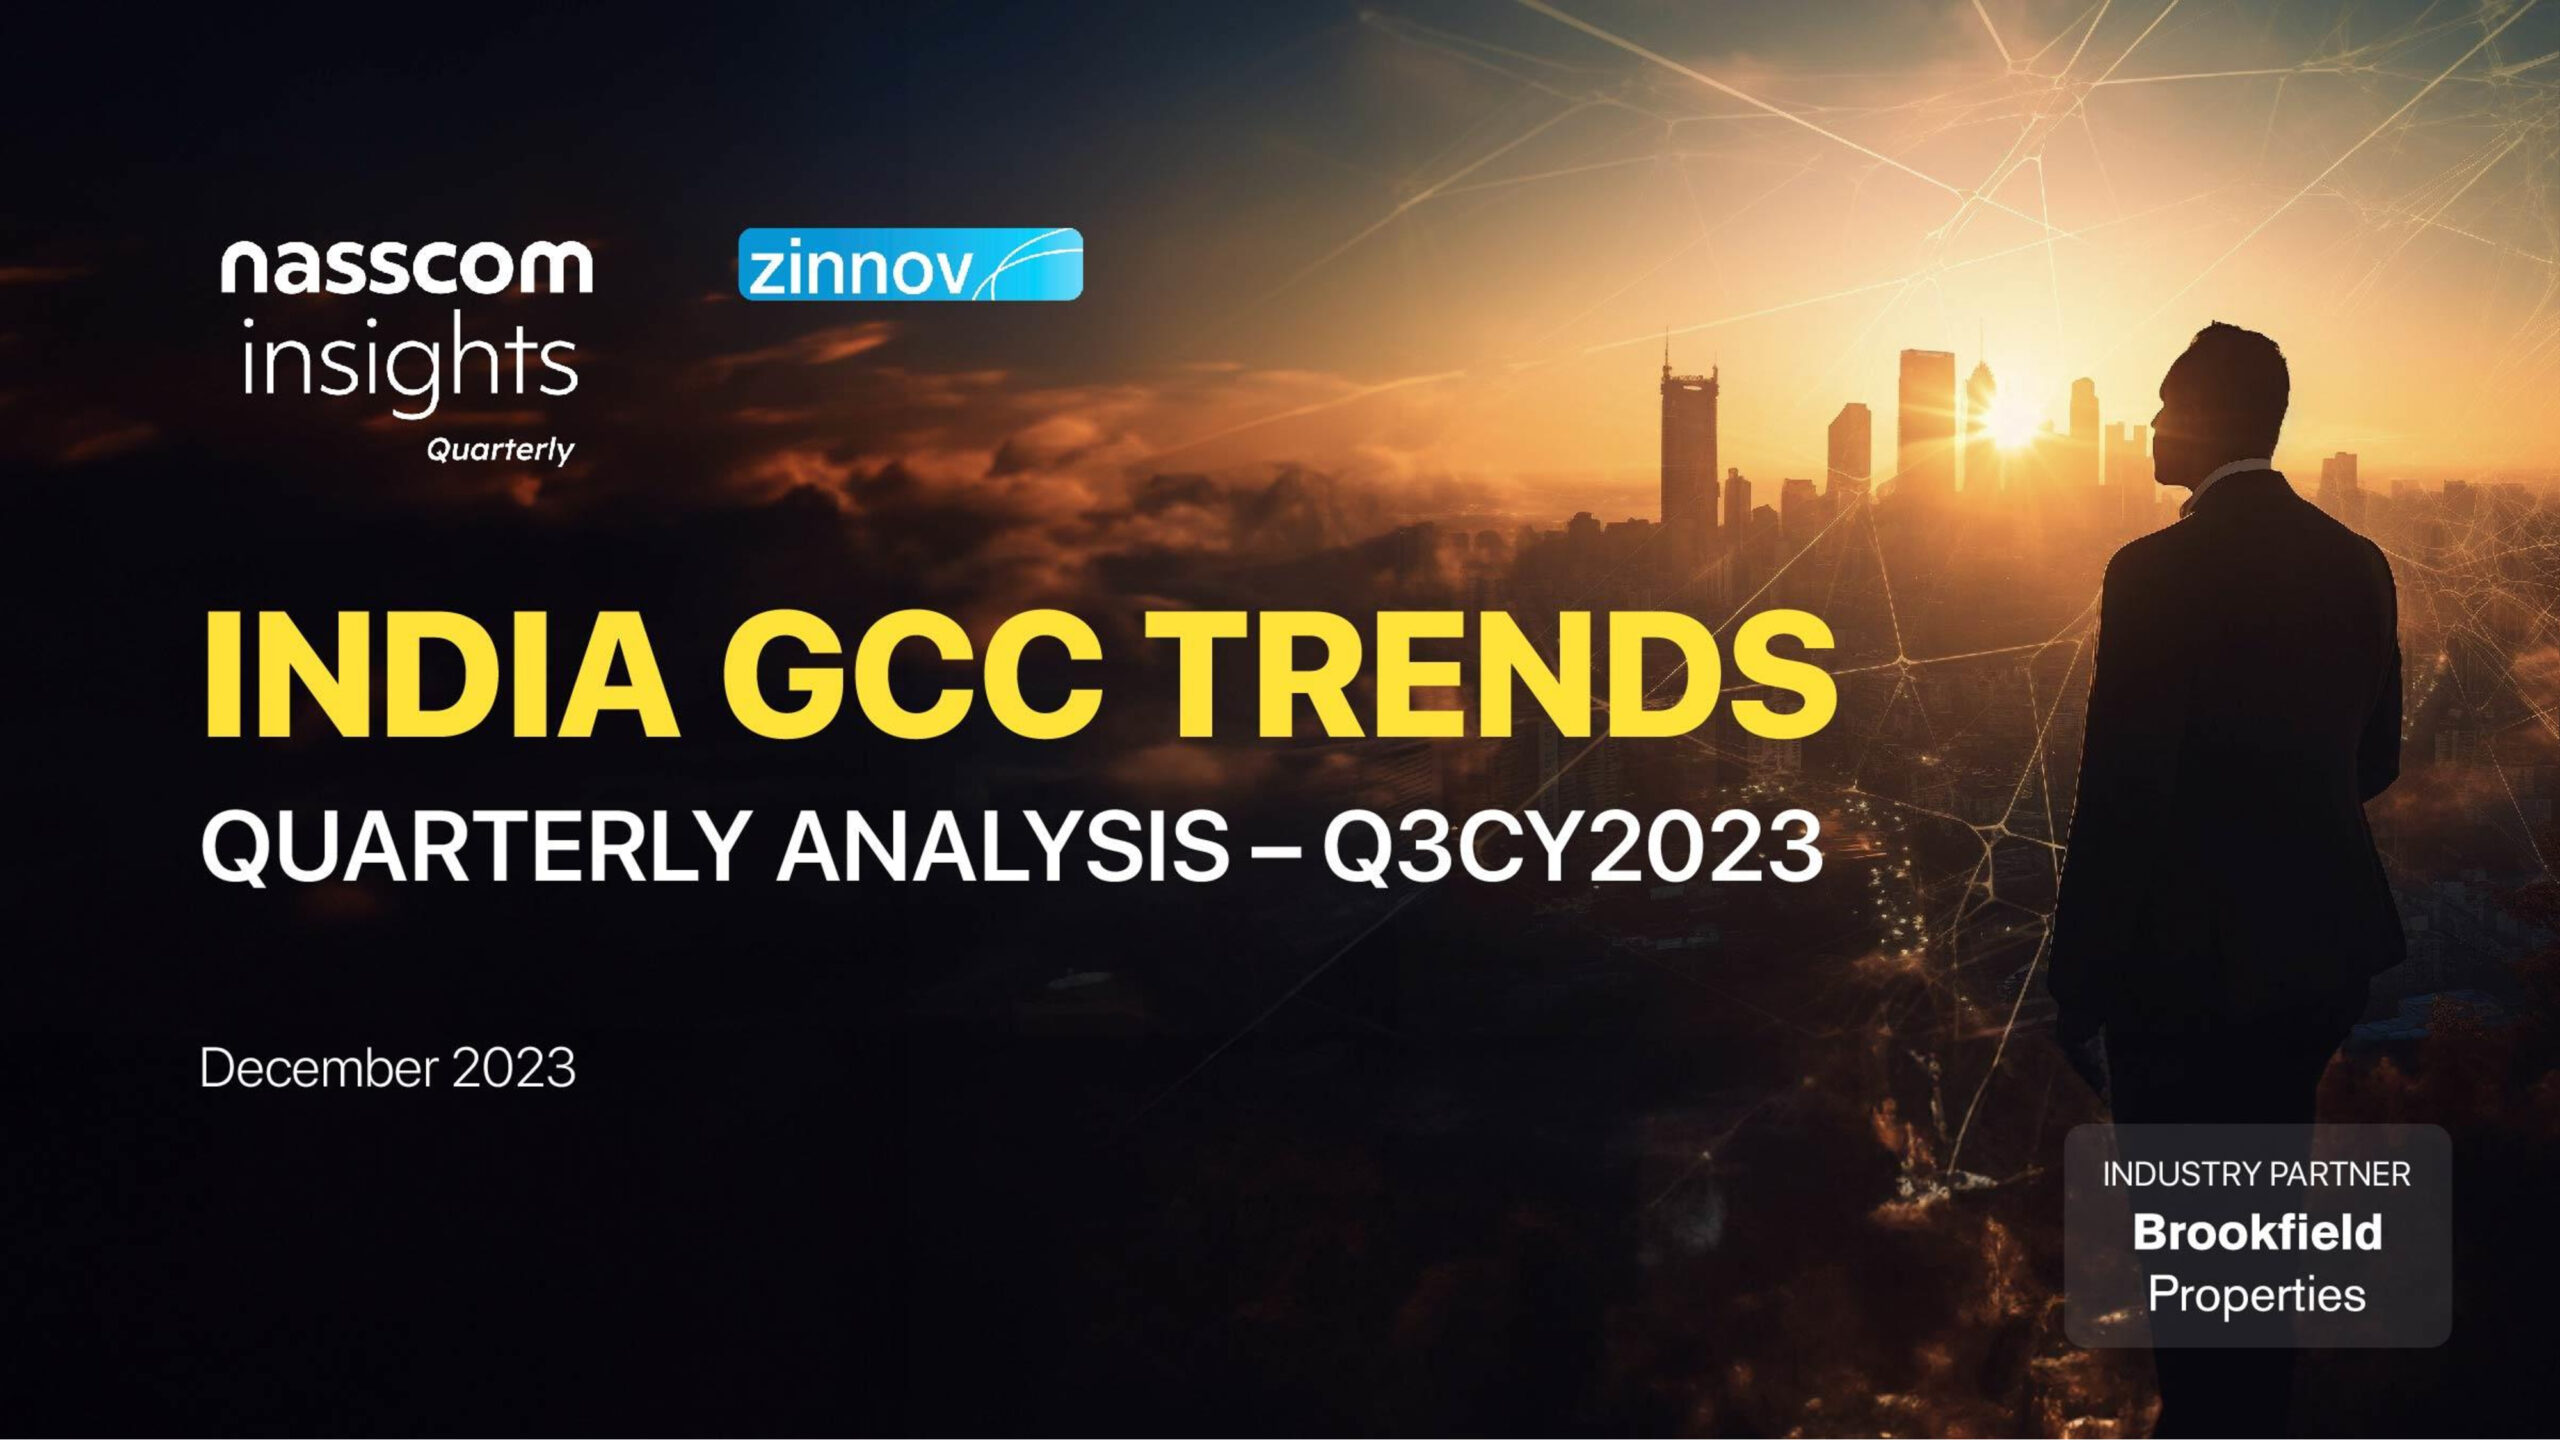 Zinnov Nasscom India Gcc Trends Report Q3 2023 Update1 Scaled